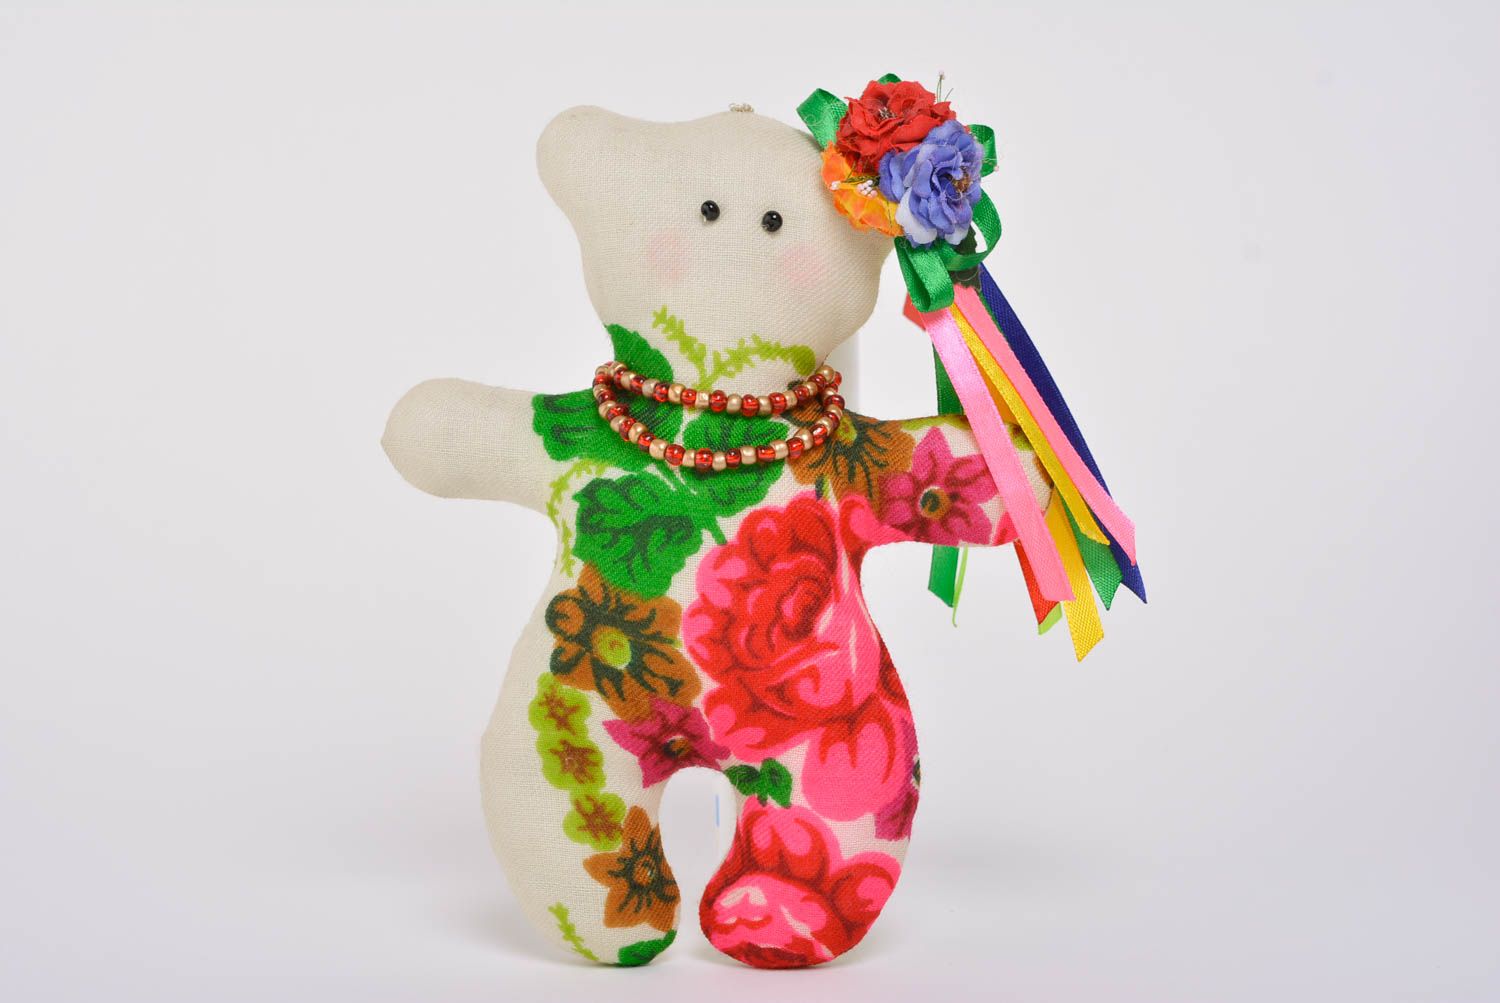 Joli jouet mou en tissu fait main en forme d'ourse sympa avec fleurs cadeau photo 1